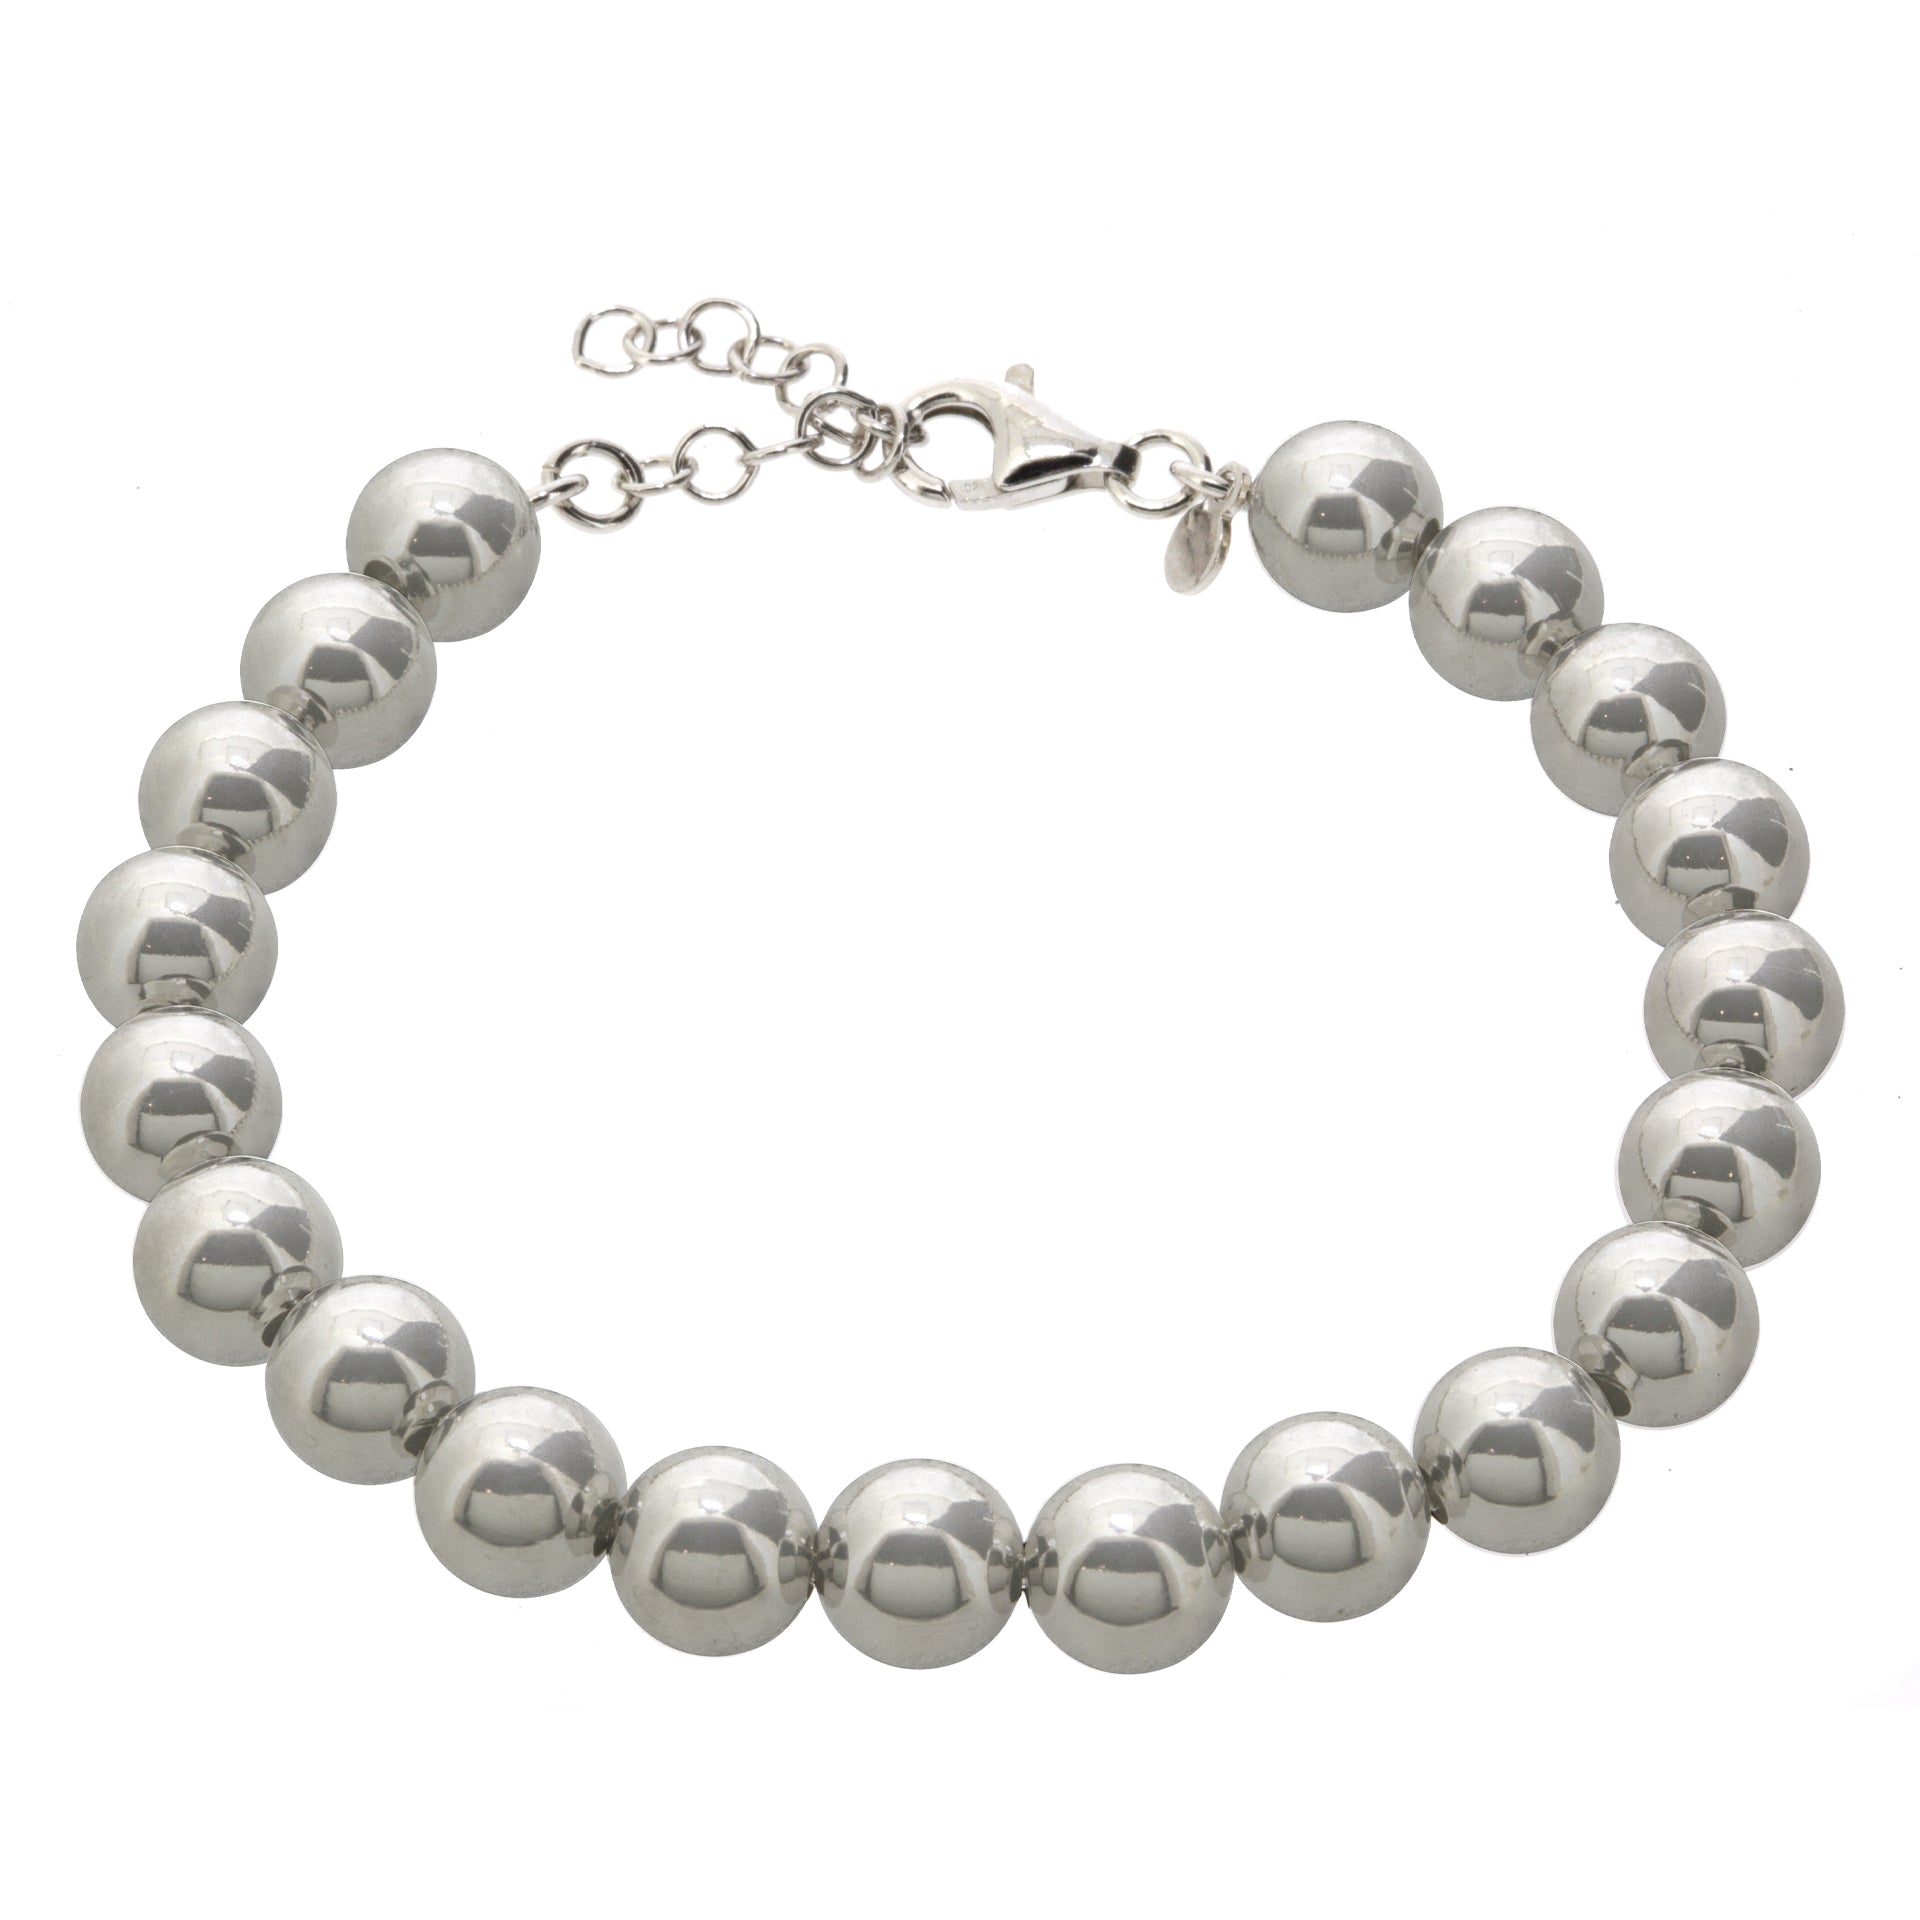 Gemvine Sterling Silver 8mm Bead Adjustable Bracelet